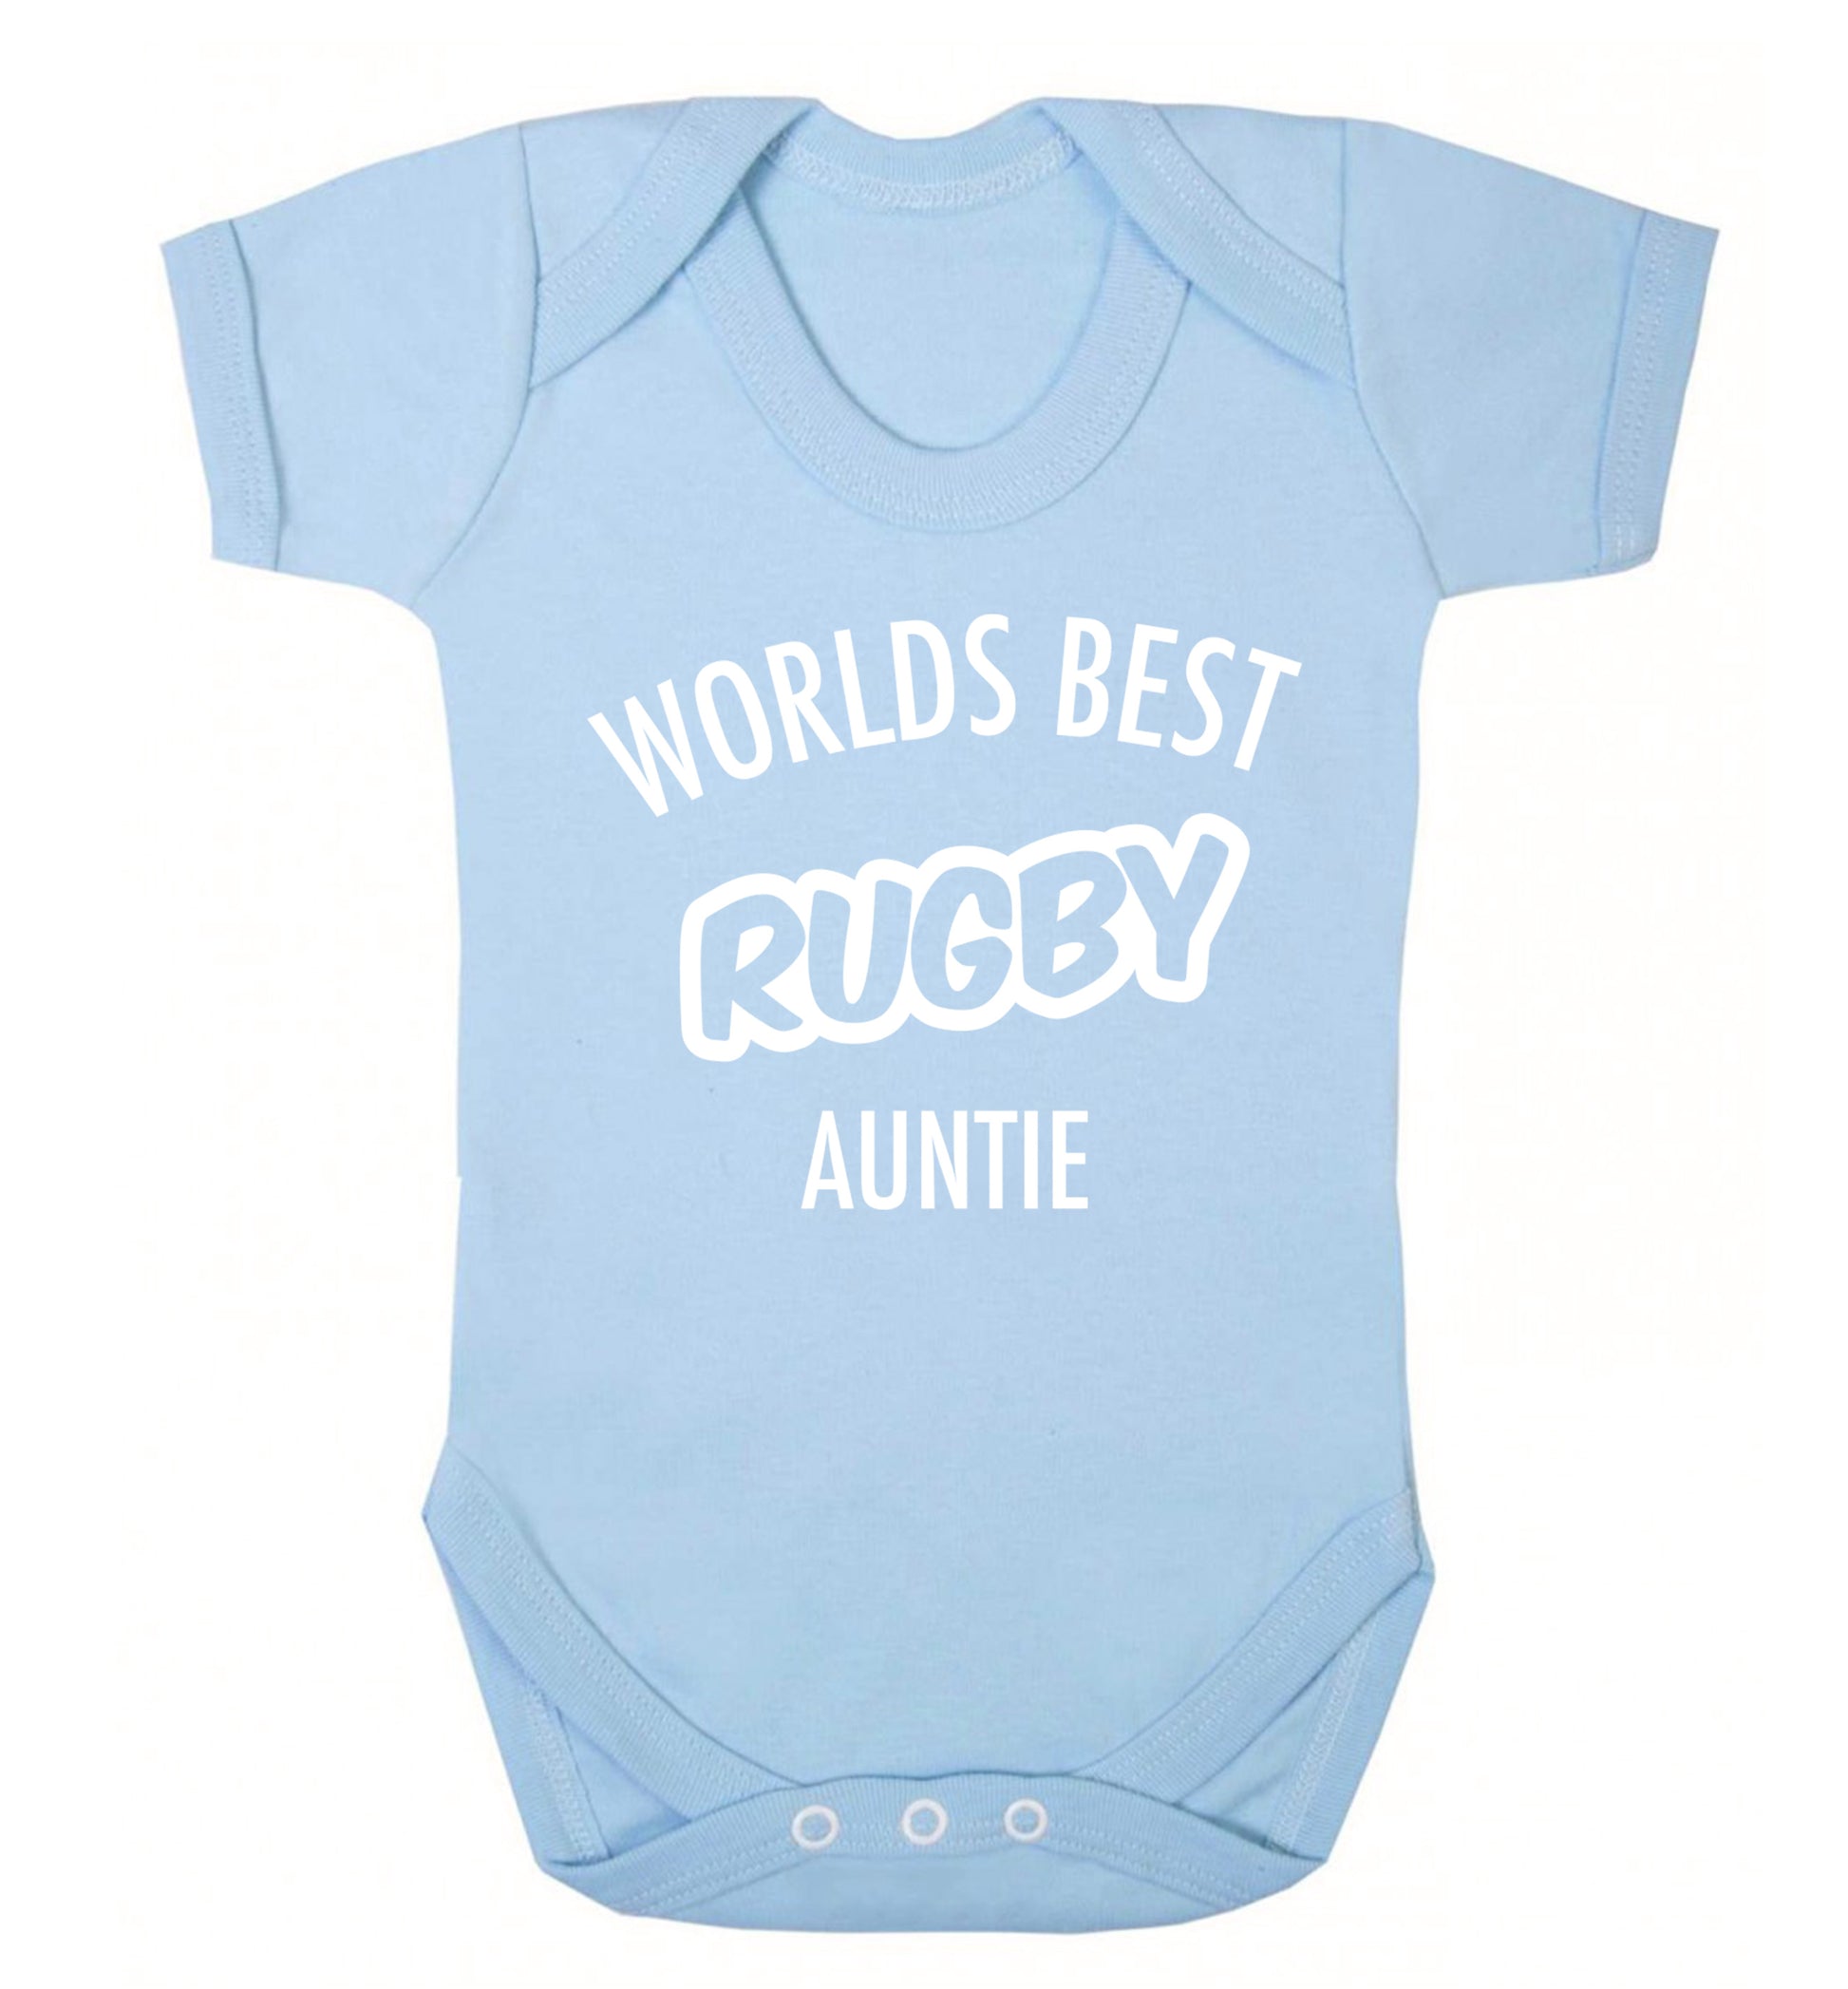 Worlds best rugby auntie Baby Vest pale blue 18-24 months